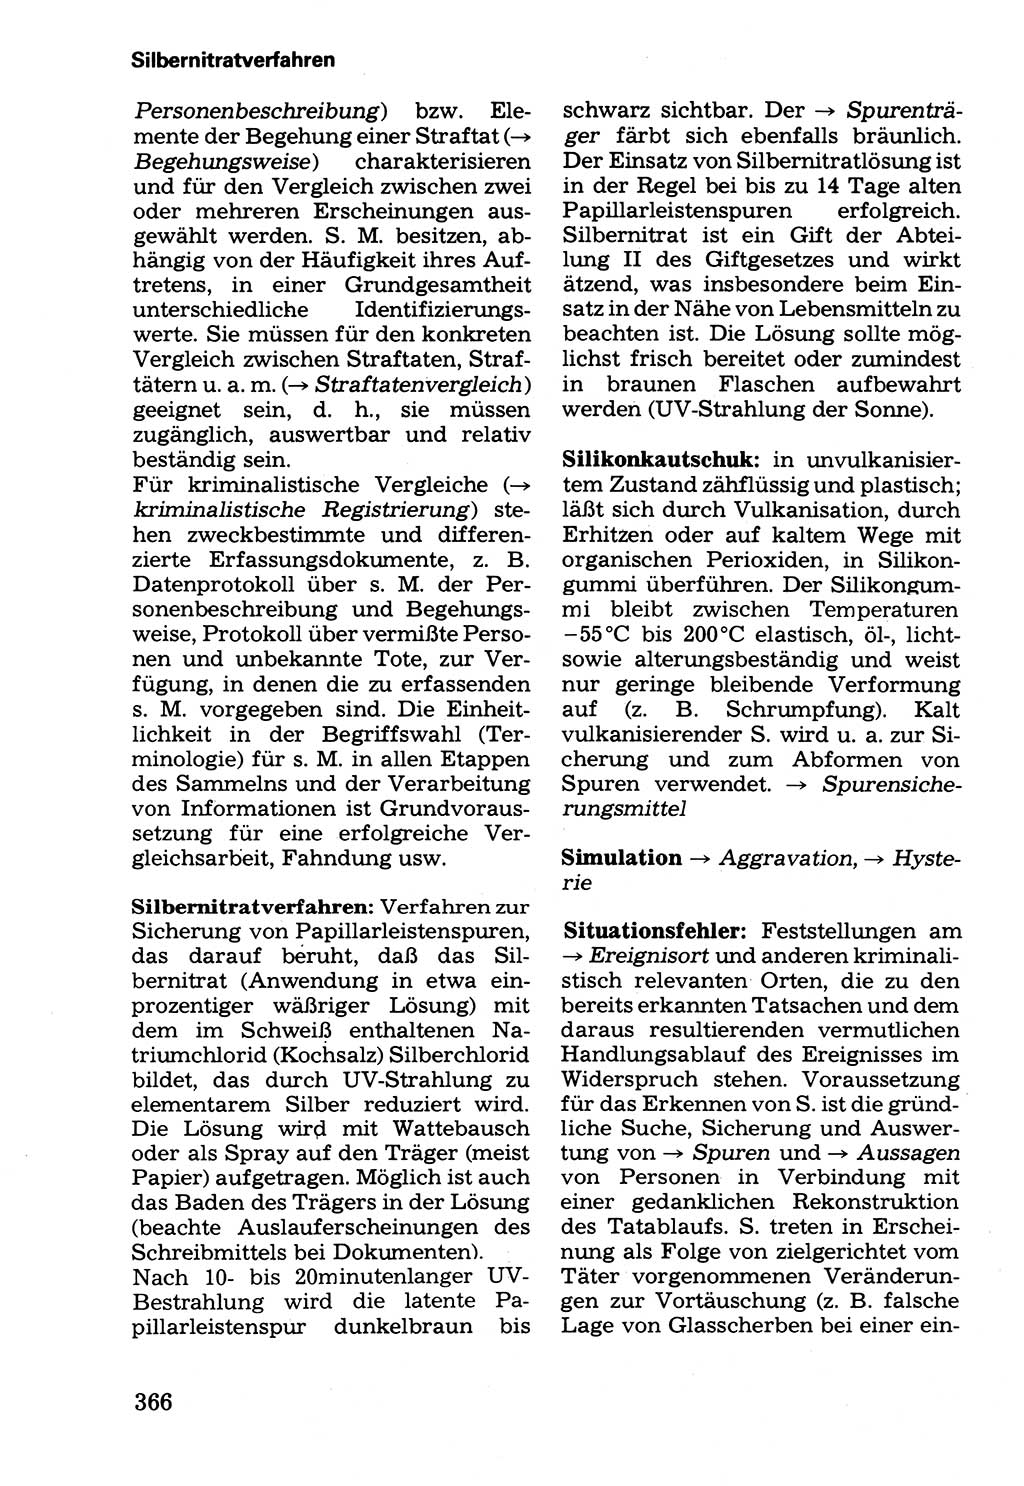 Wörterbuch der sozialistischen Kriminalistik [Deutsche Demokratische Republik (DDR)] 1981, Seite 366 (Wb. soz. Krim. DDR 1981, S. 366)